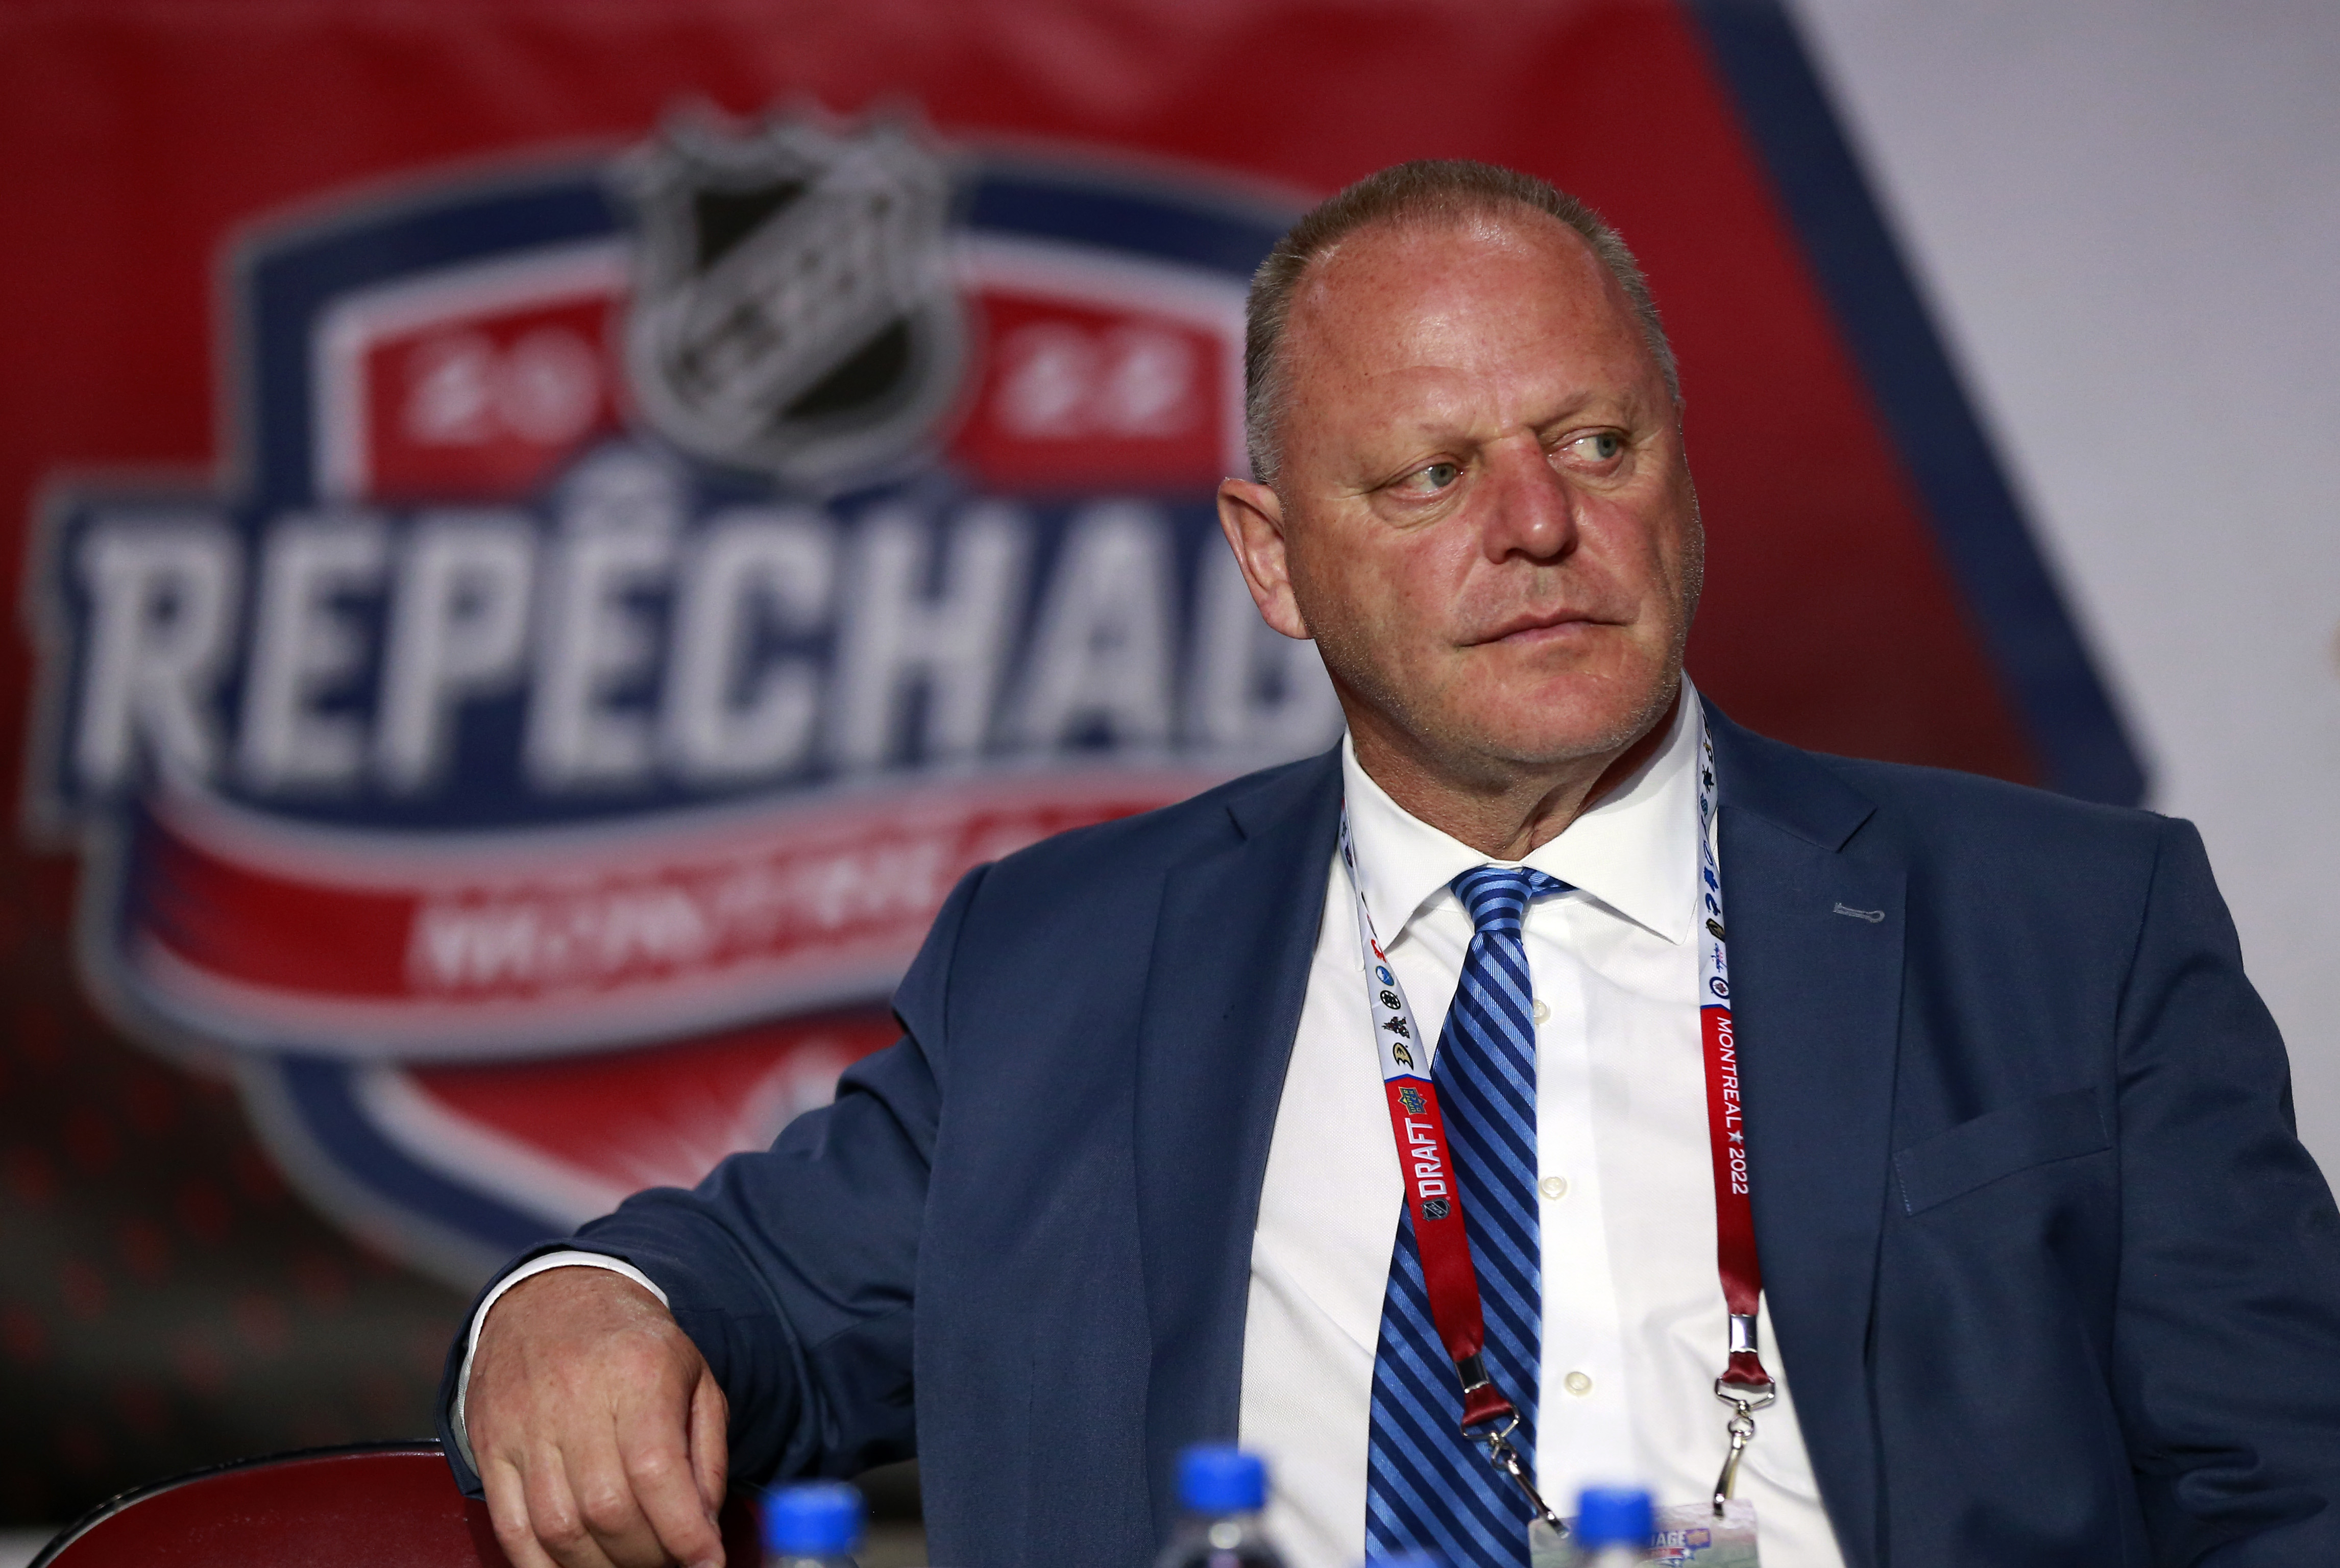 2022 Upper Deck NHL Draft - Round One